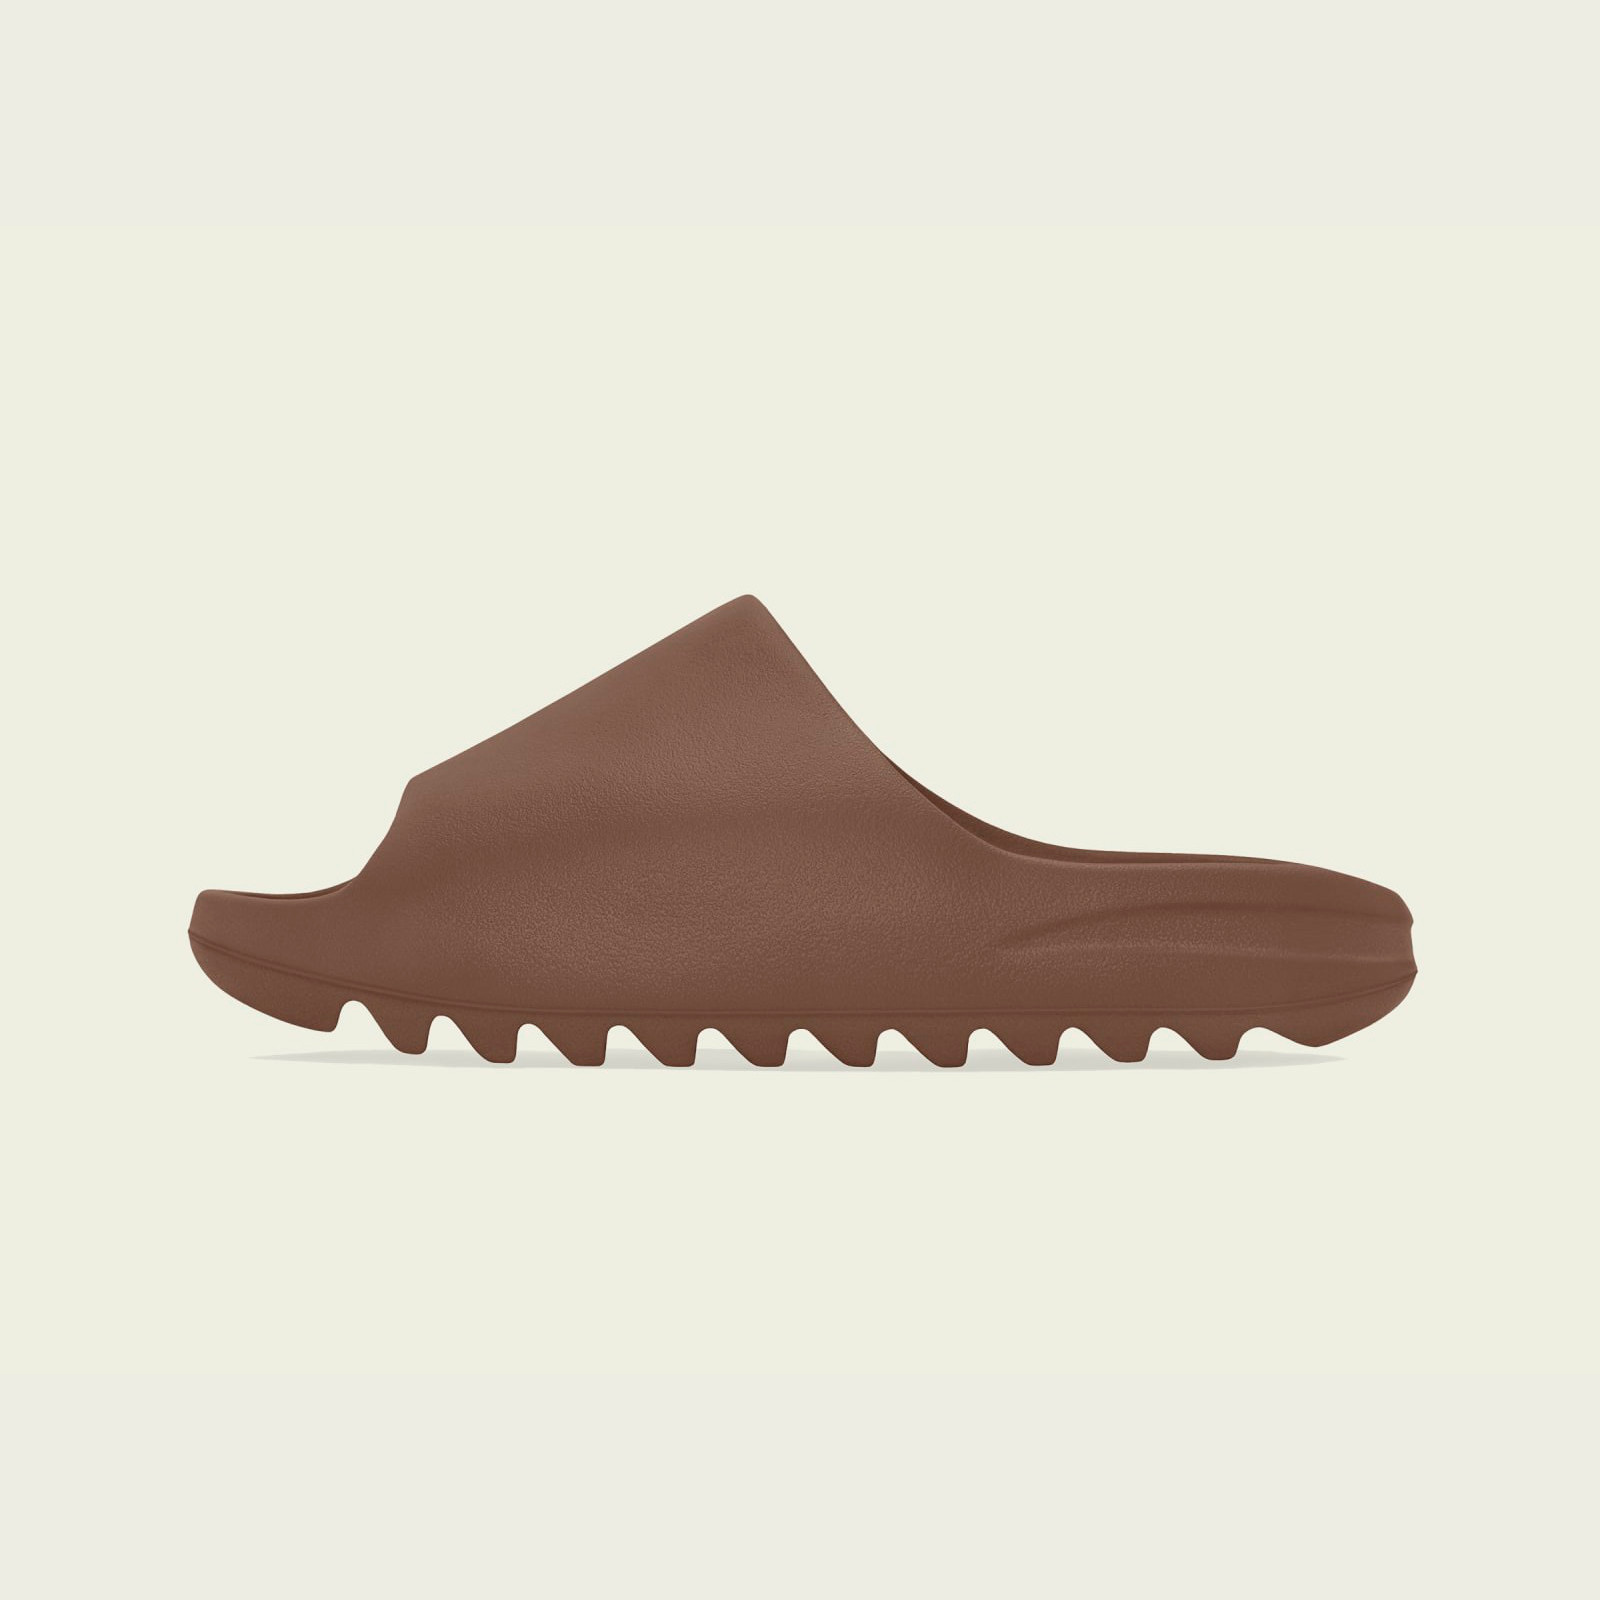 Adidas Yeezy Slide
« Flax »